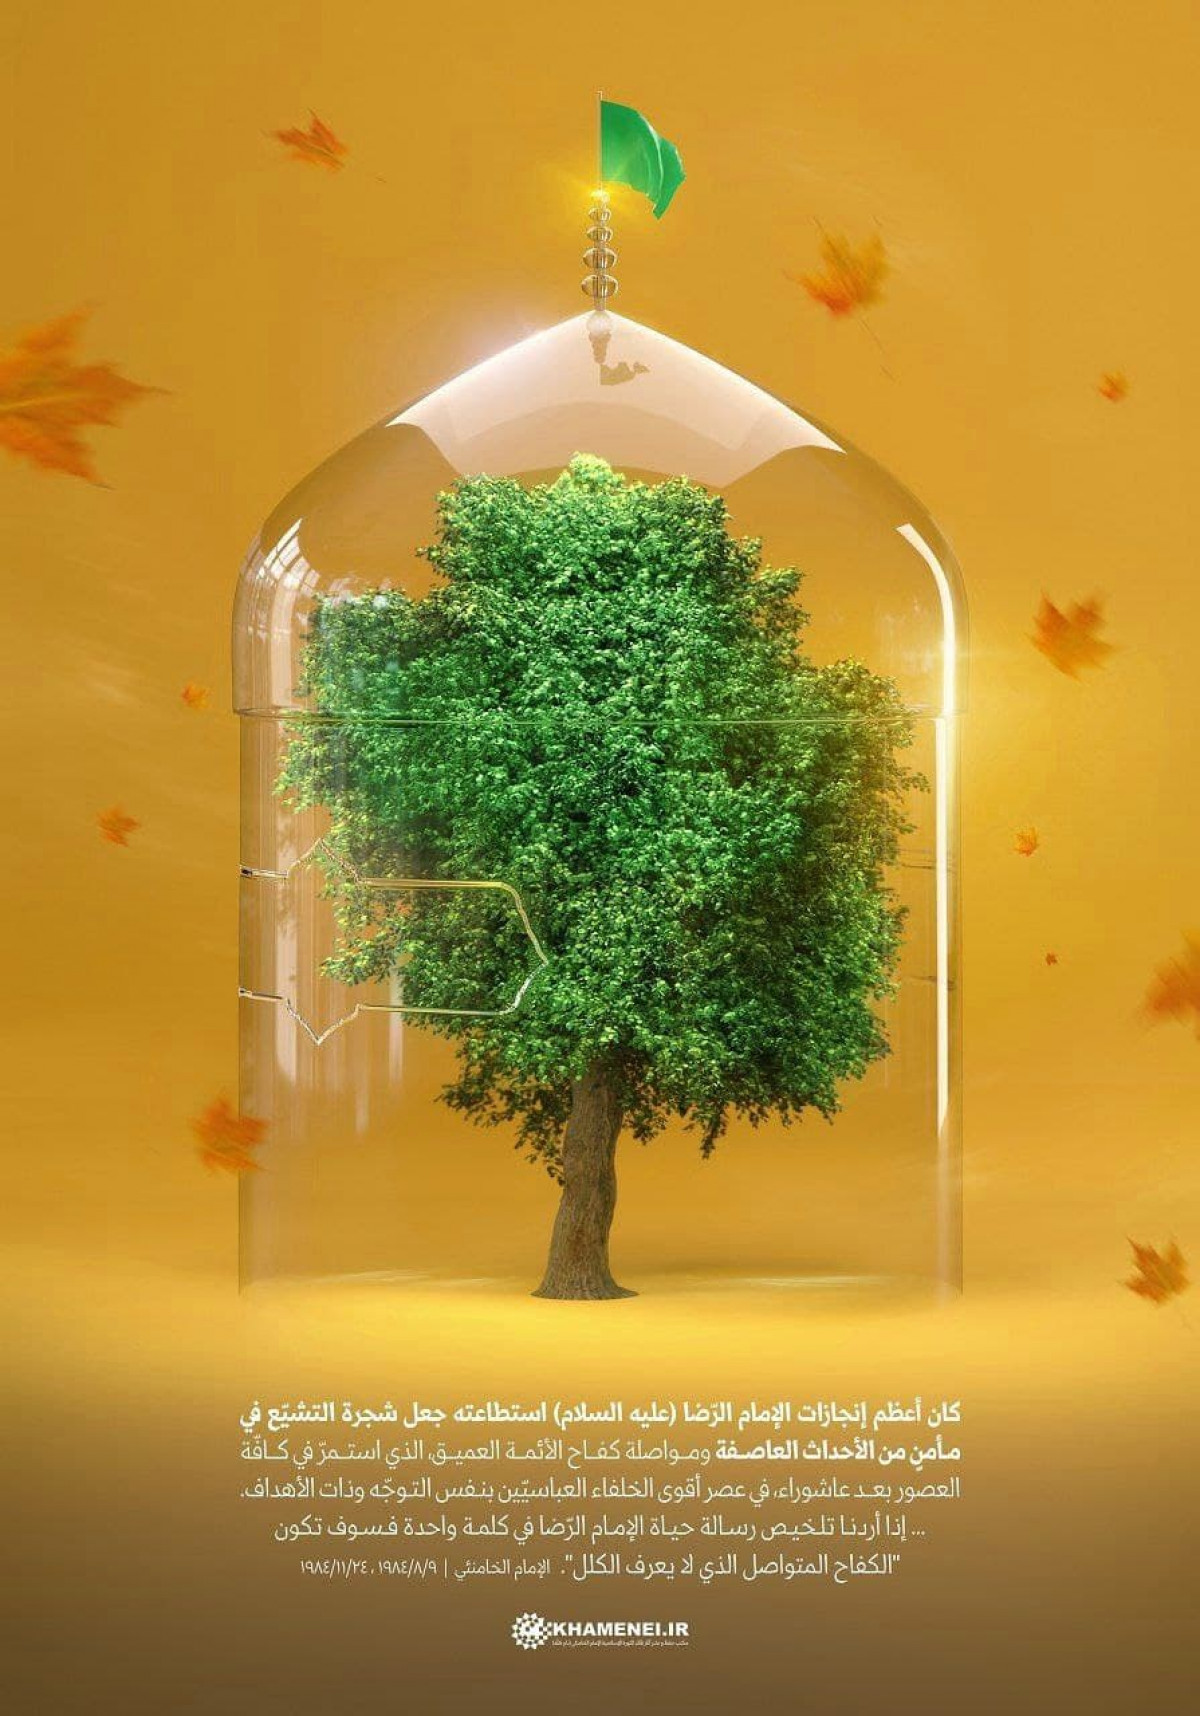 الإمام الرضا جعل شجرة التشيّع في مأمنٍ من الأحداث العاصفة